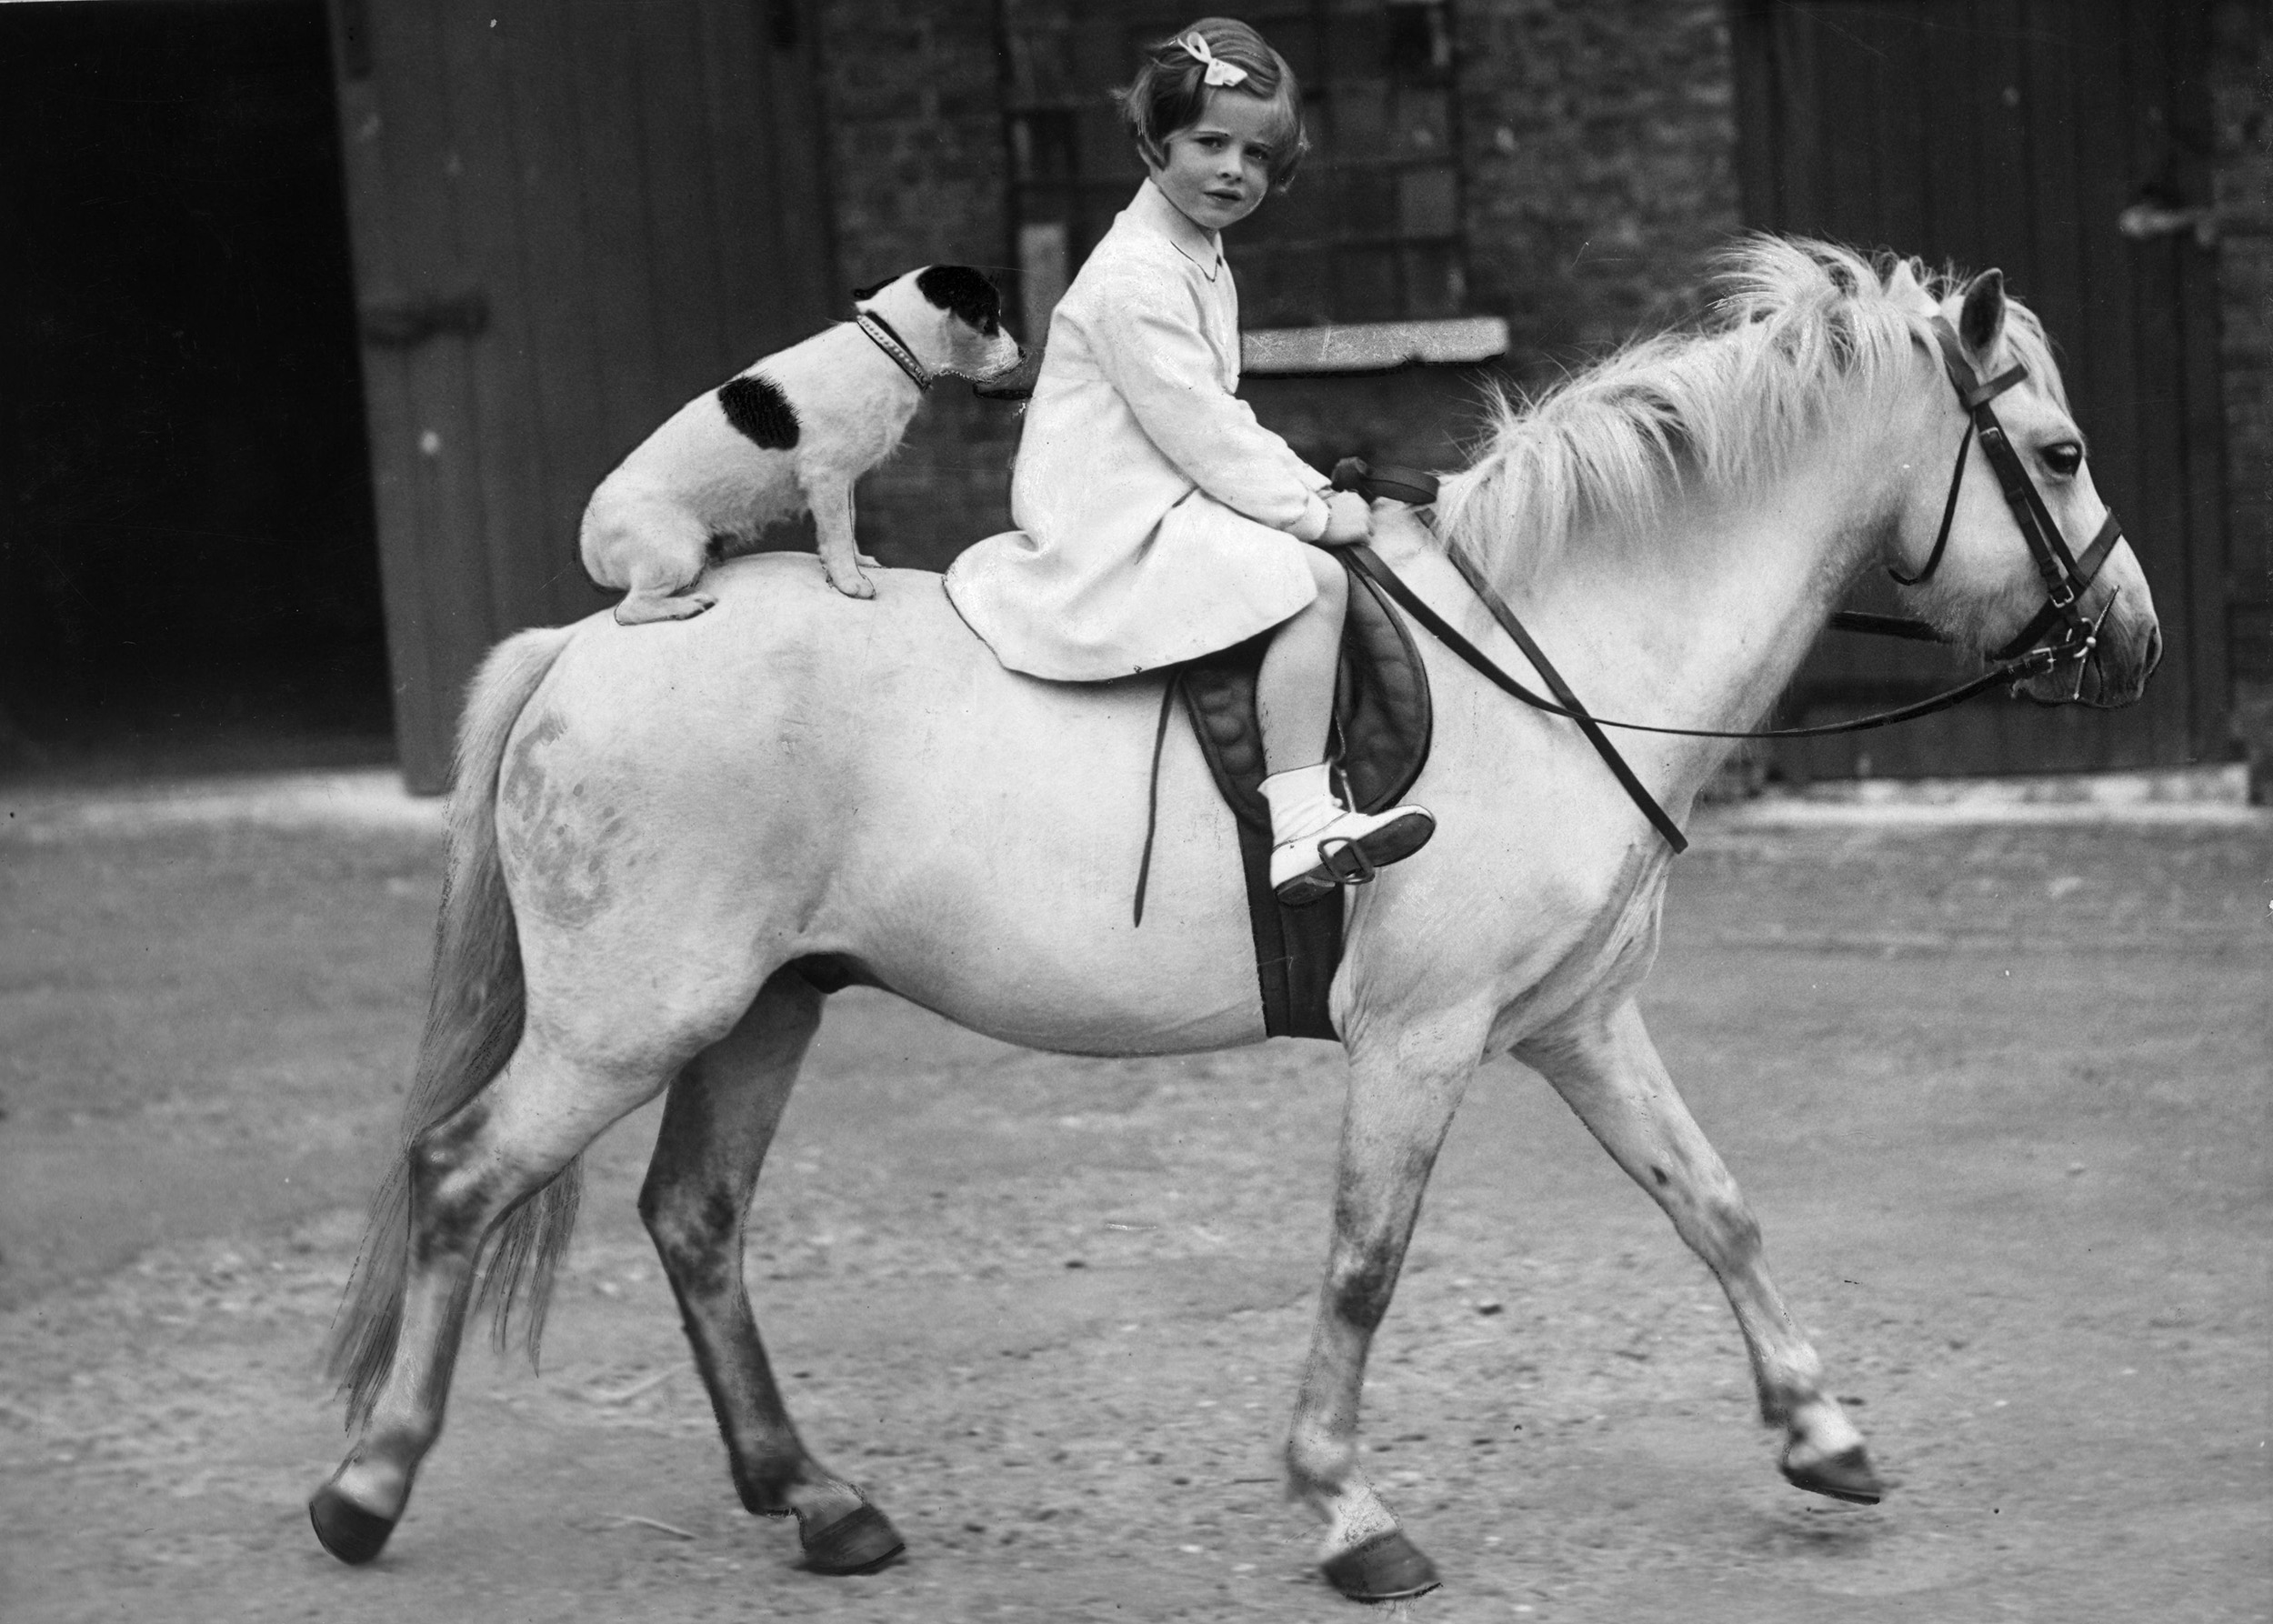 1935 Egy kislány lovaglás közben a kutyusát is felültette a lóra